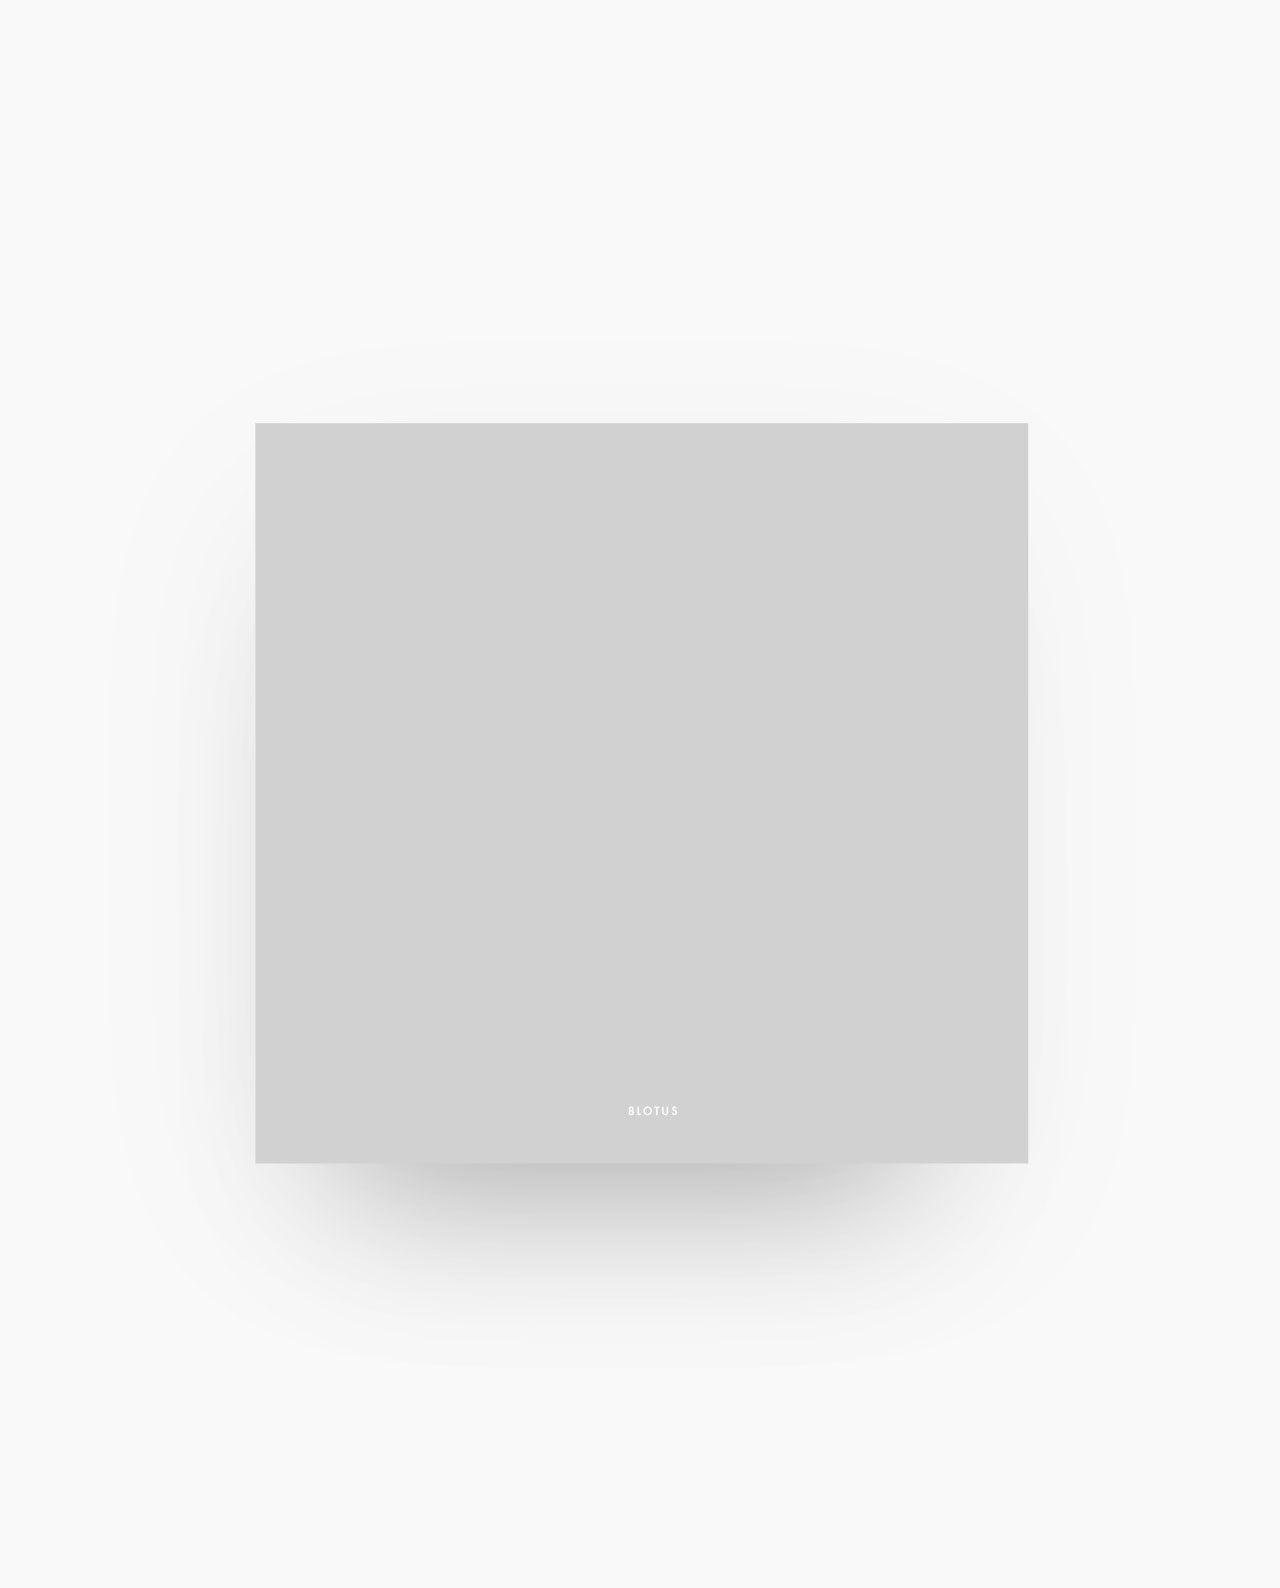 ST015 - Gray - Sticky Notes